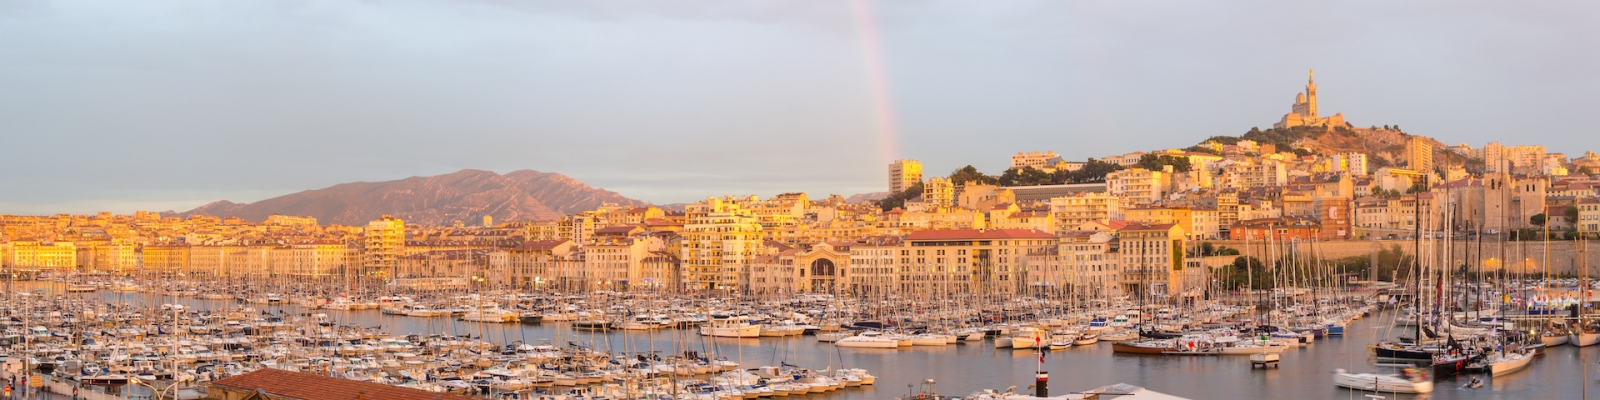 Hafen von Marseille - Frankreich